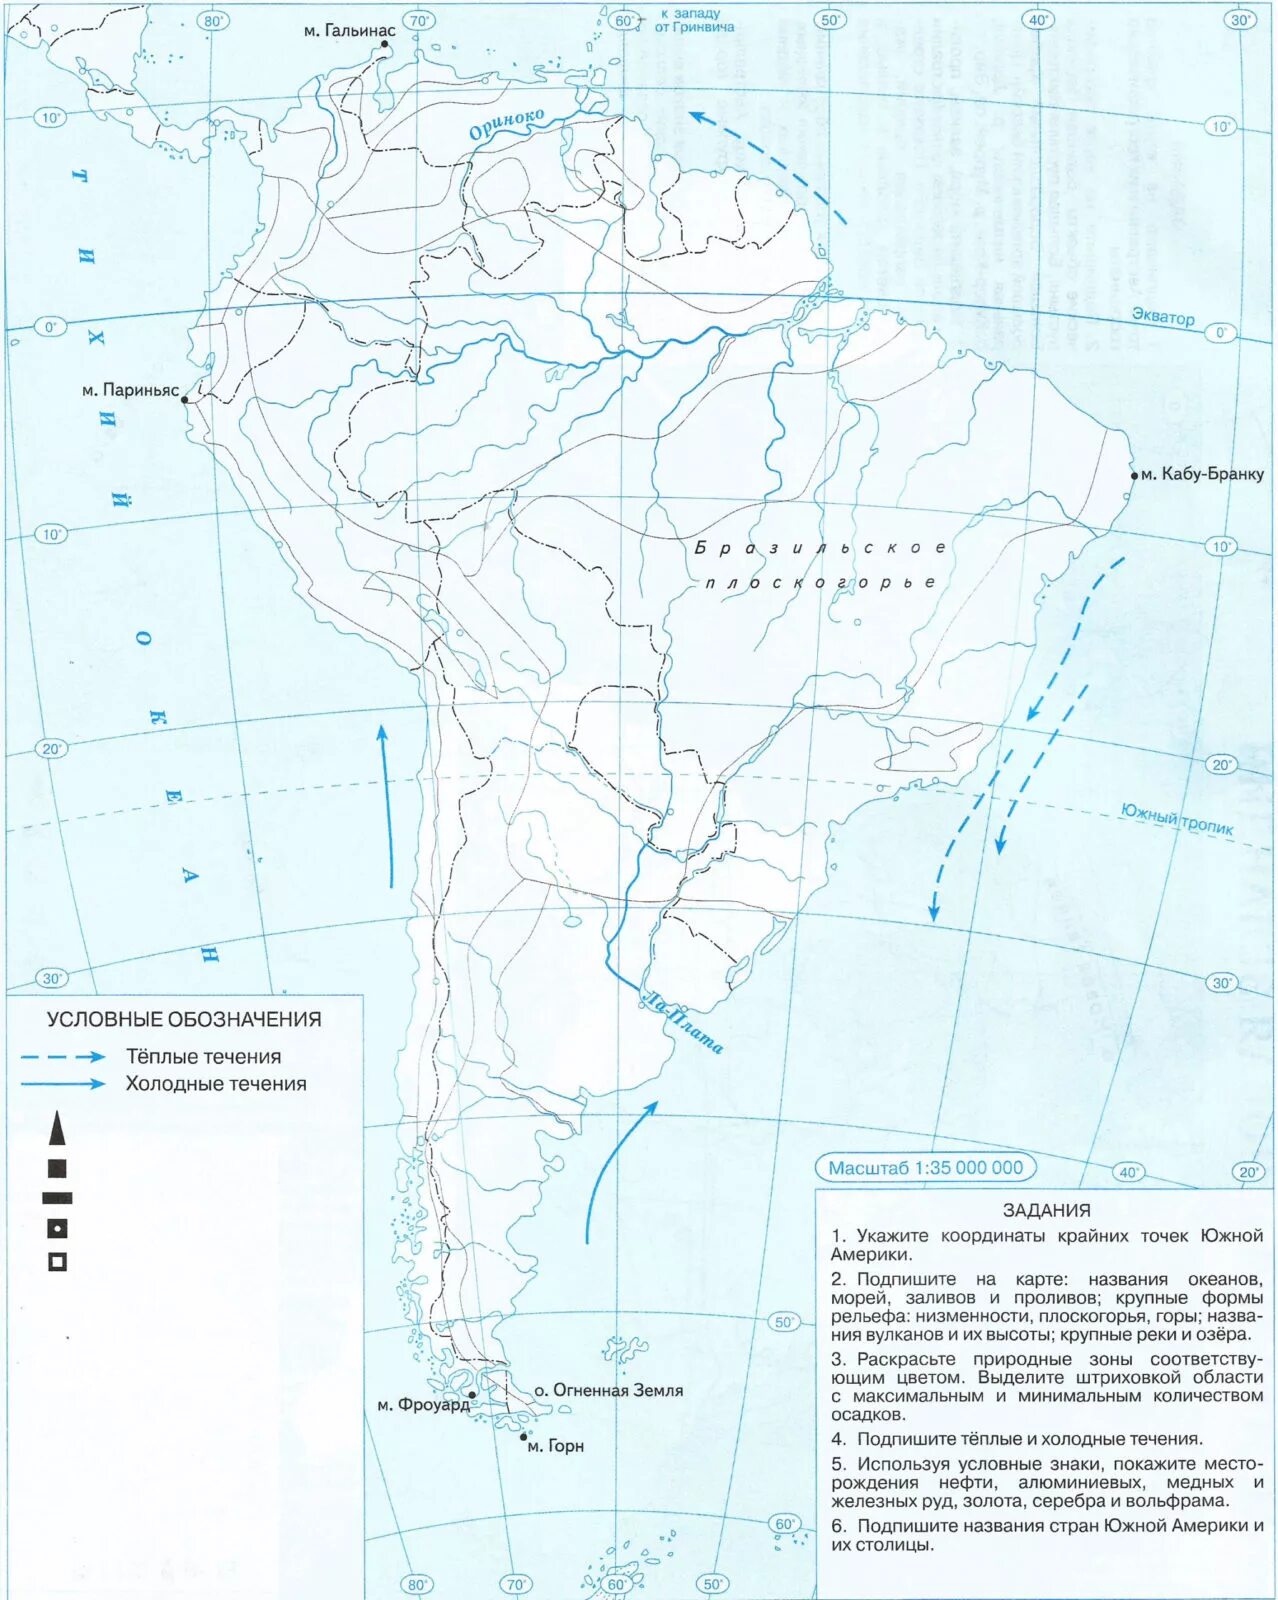 Физическая карта Южной Америки 7 класс контурная карта. Контурная карта по географии 7 класс Южная Америка. Физическая карта Южной Америки 7 класс география контурная карта. Контурная карта по географии 7 класс по Южной Америке. Крупнейшие реки южной америки на контурной карте